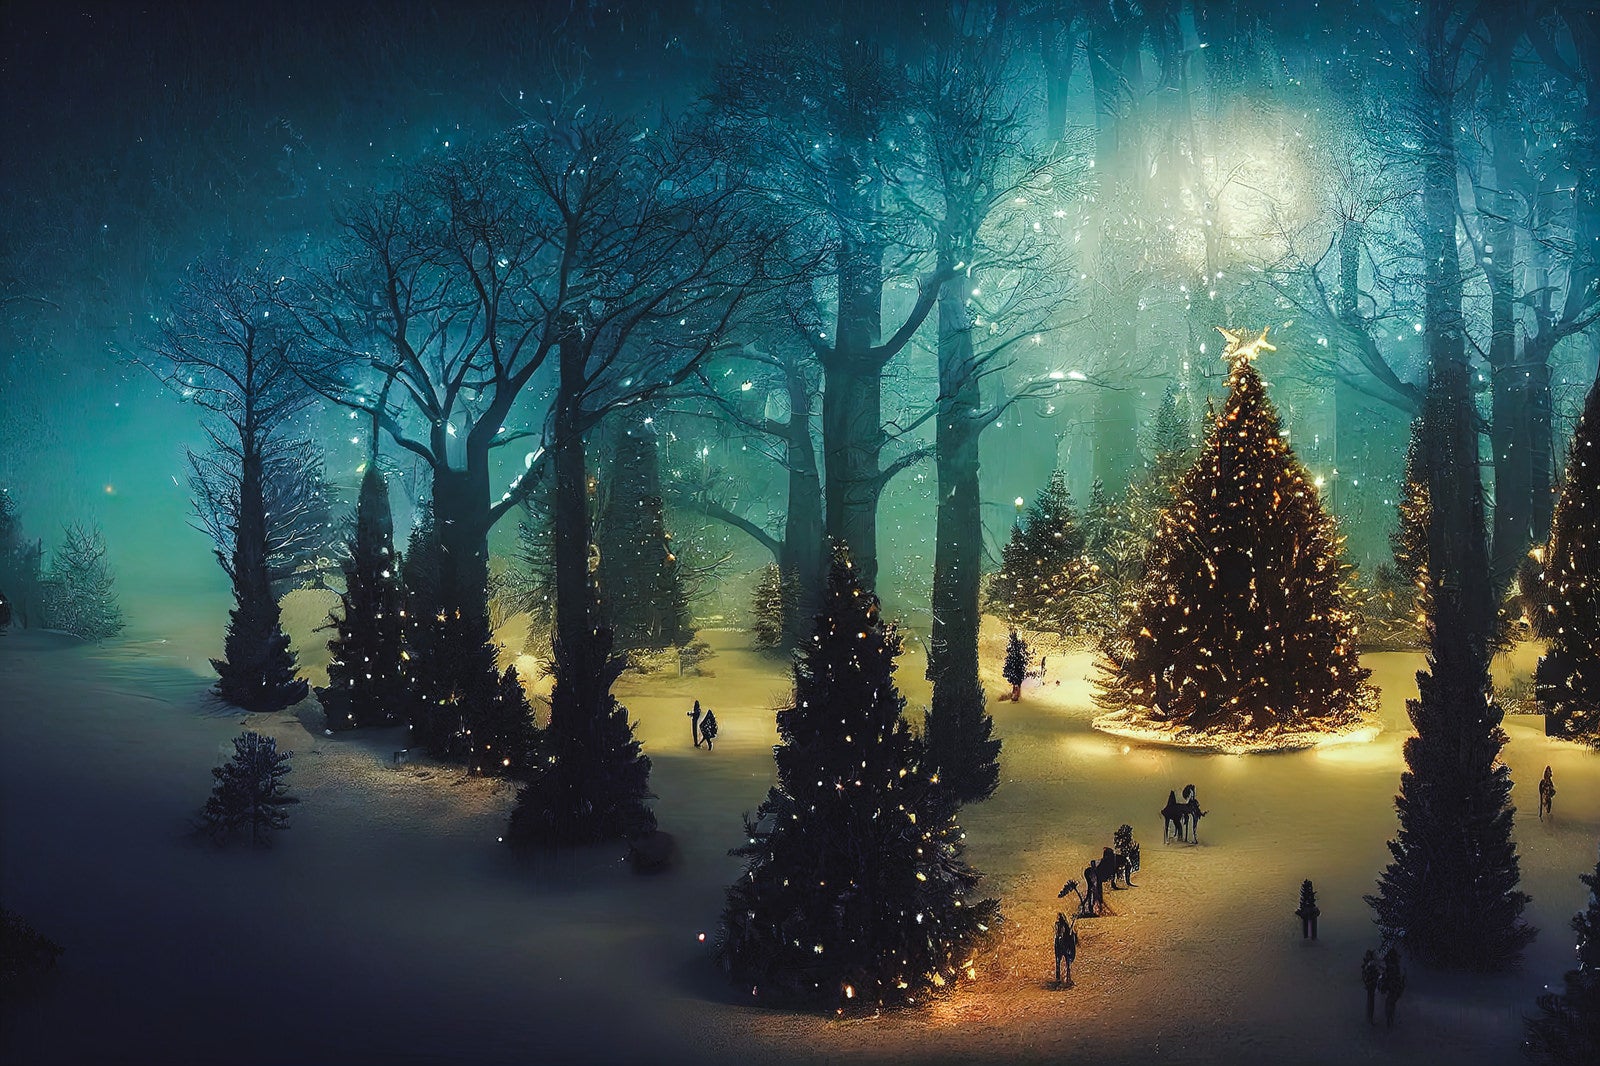 「ライトアップされたクリスマスツリーの森」の写真